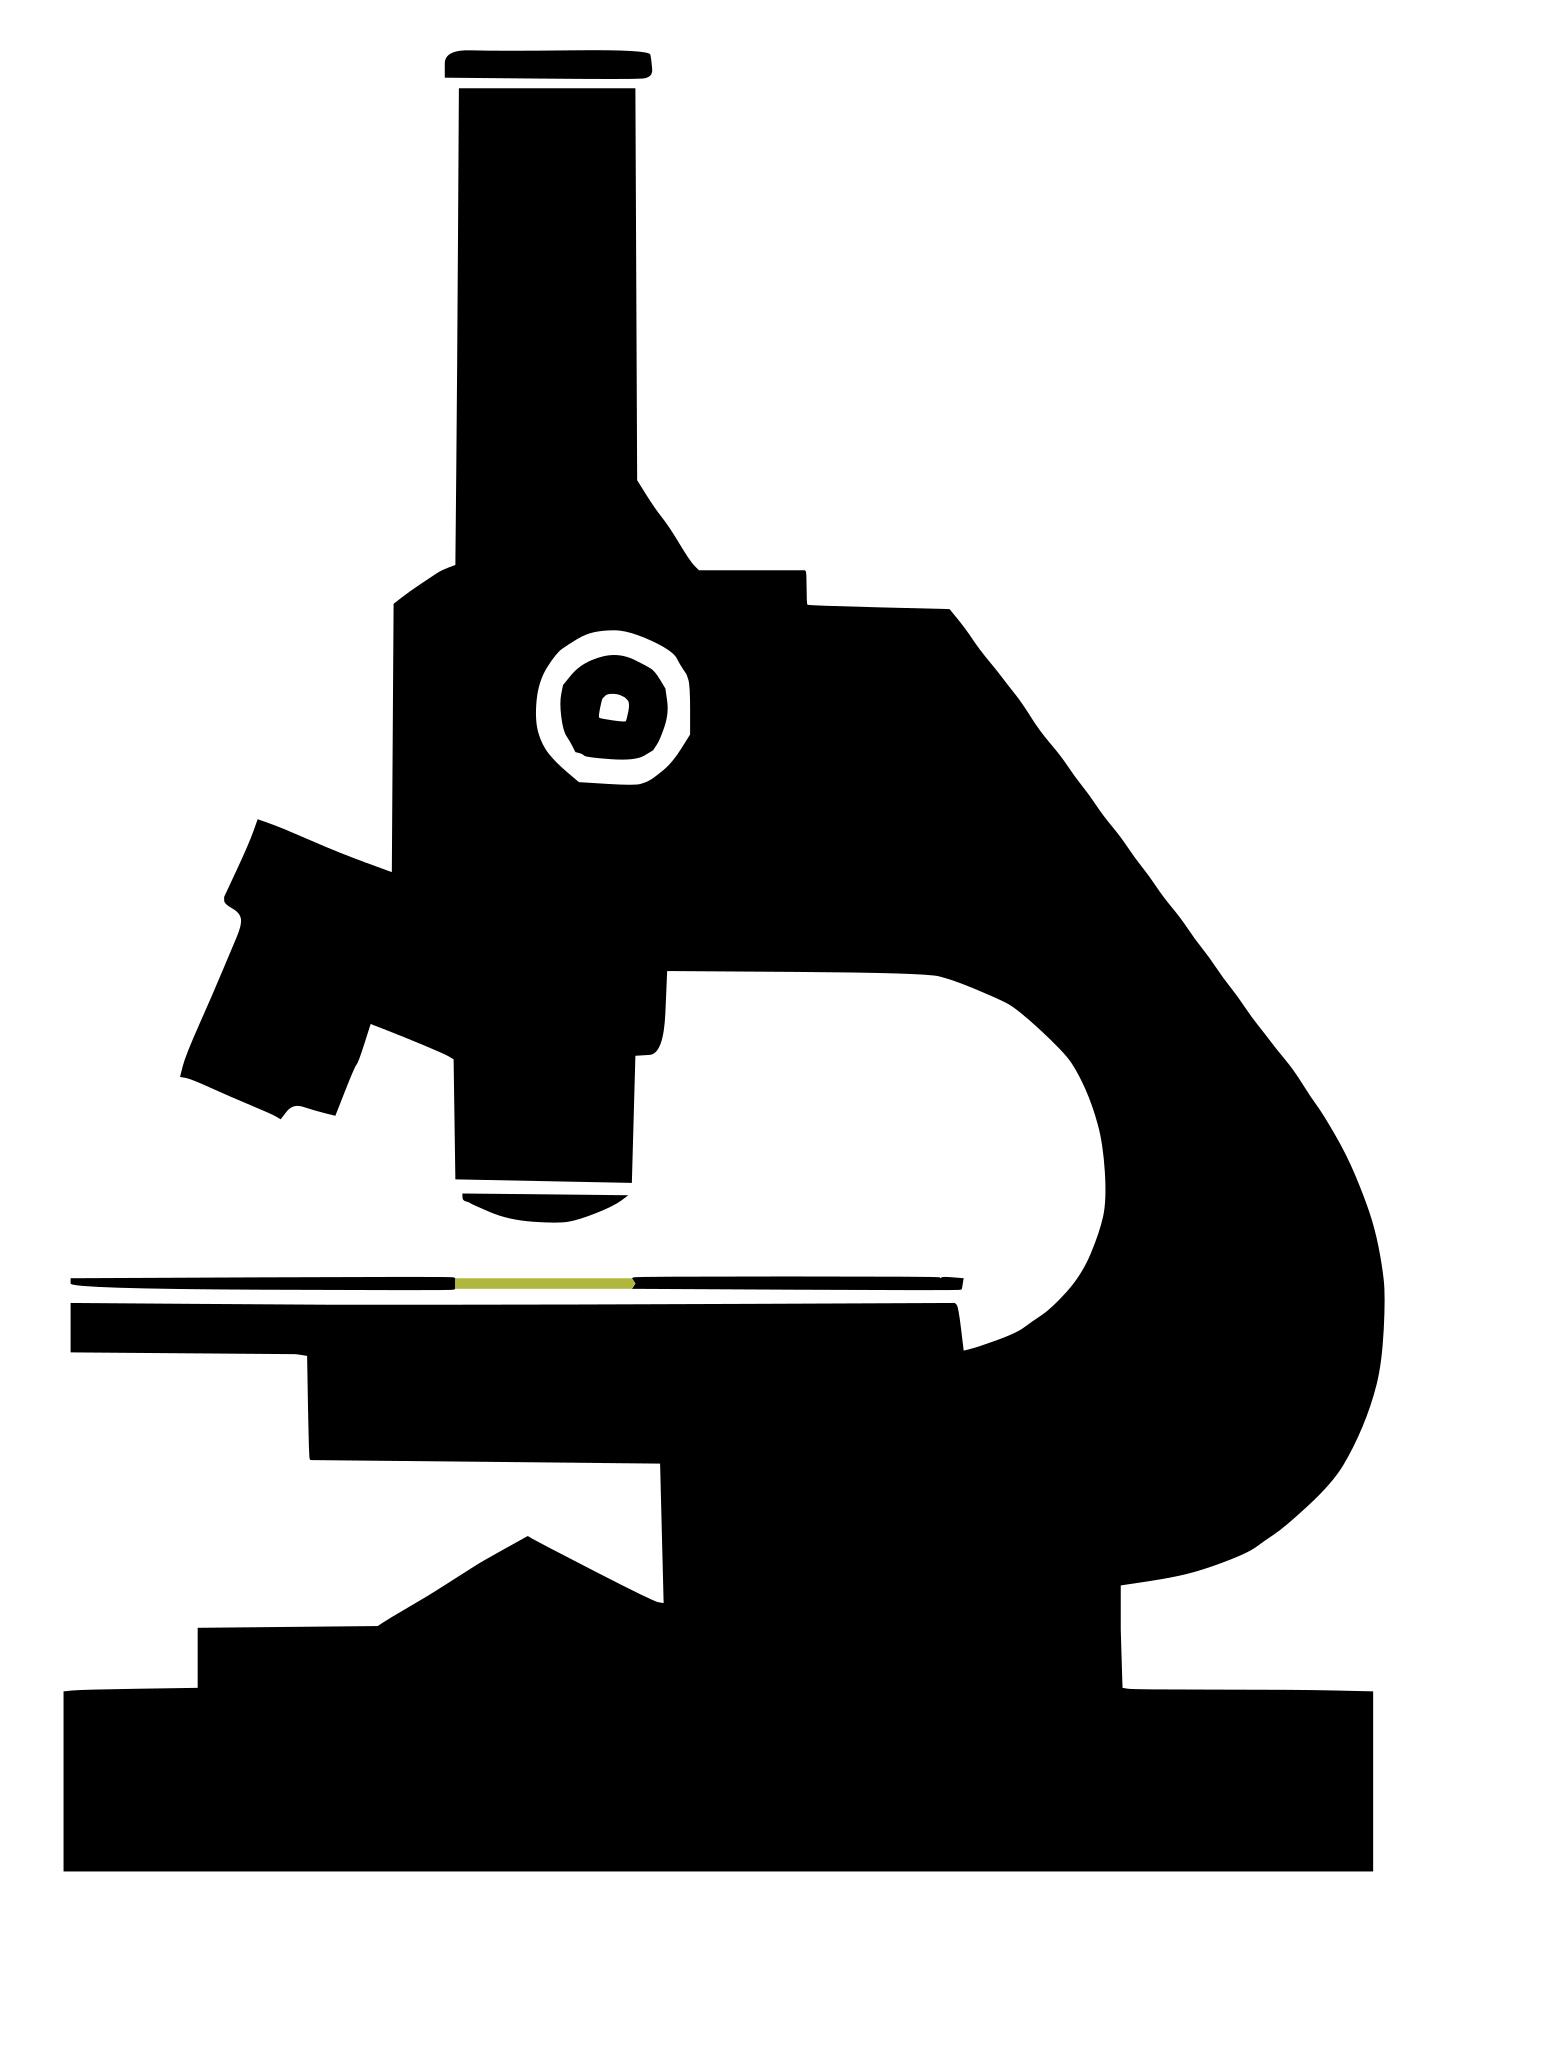 Микроскоп на белом фоне